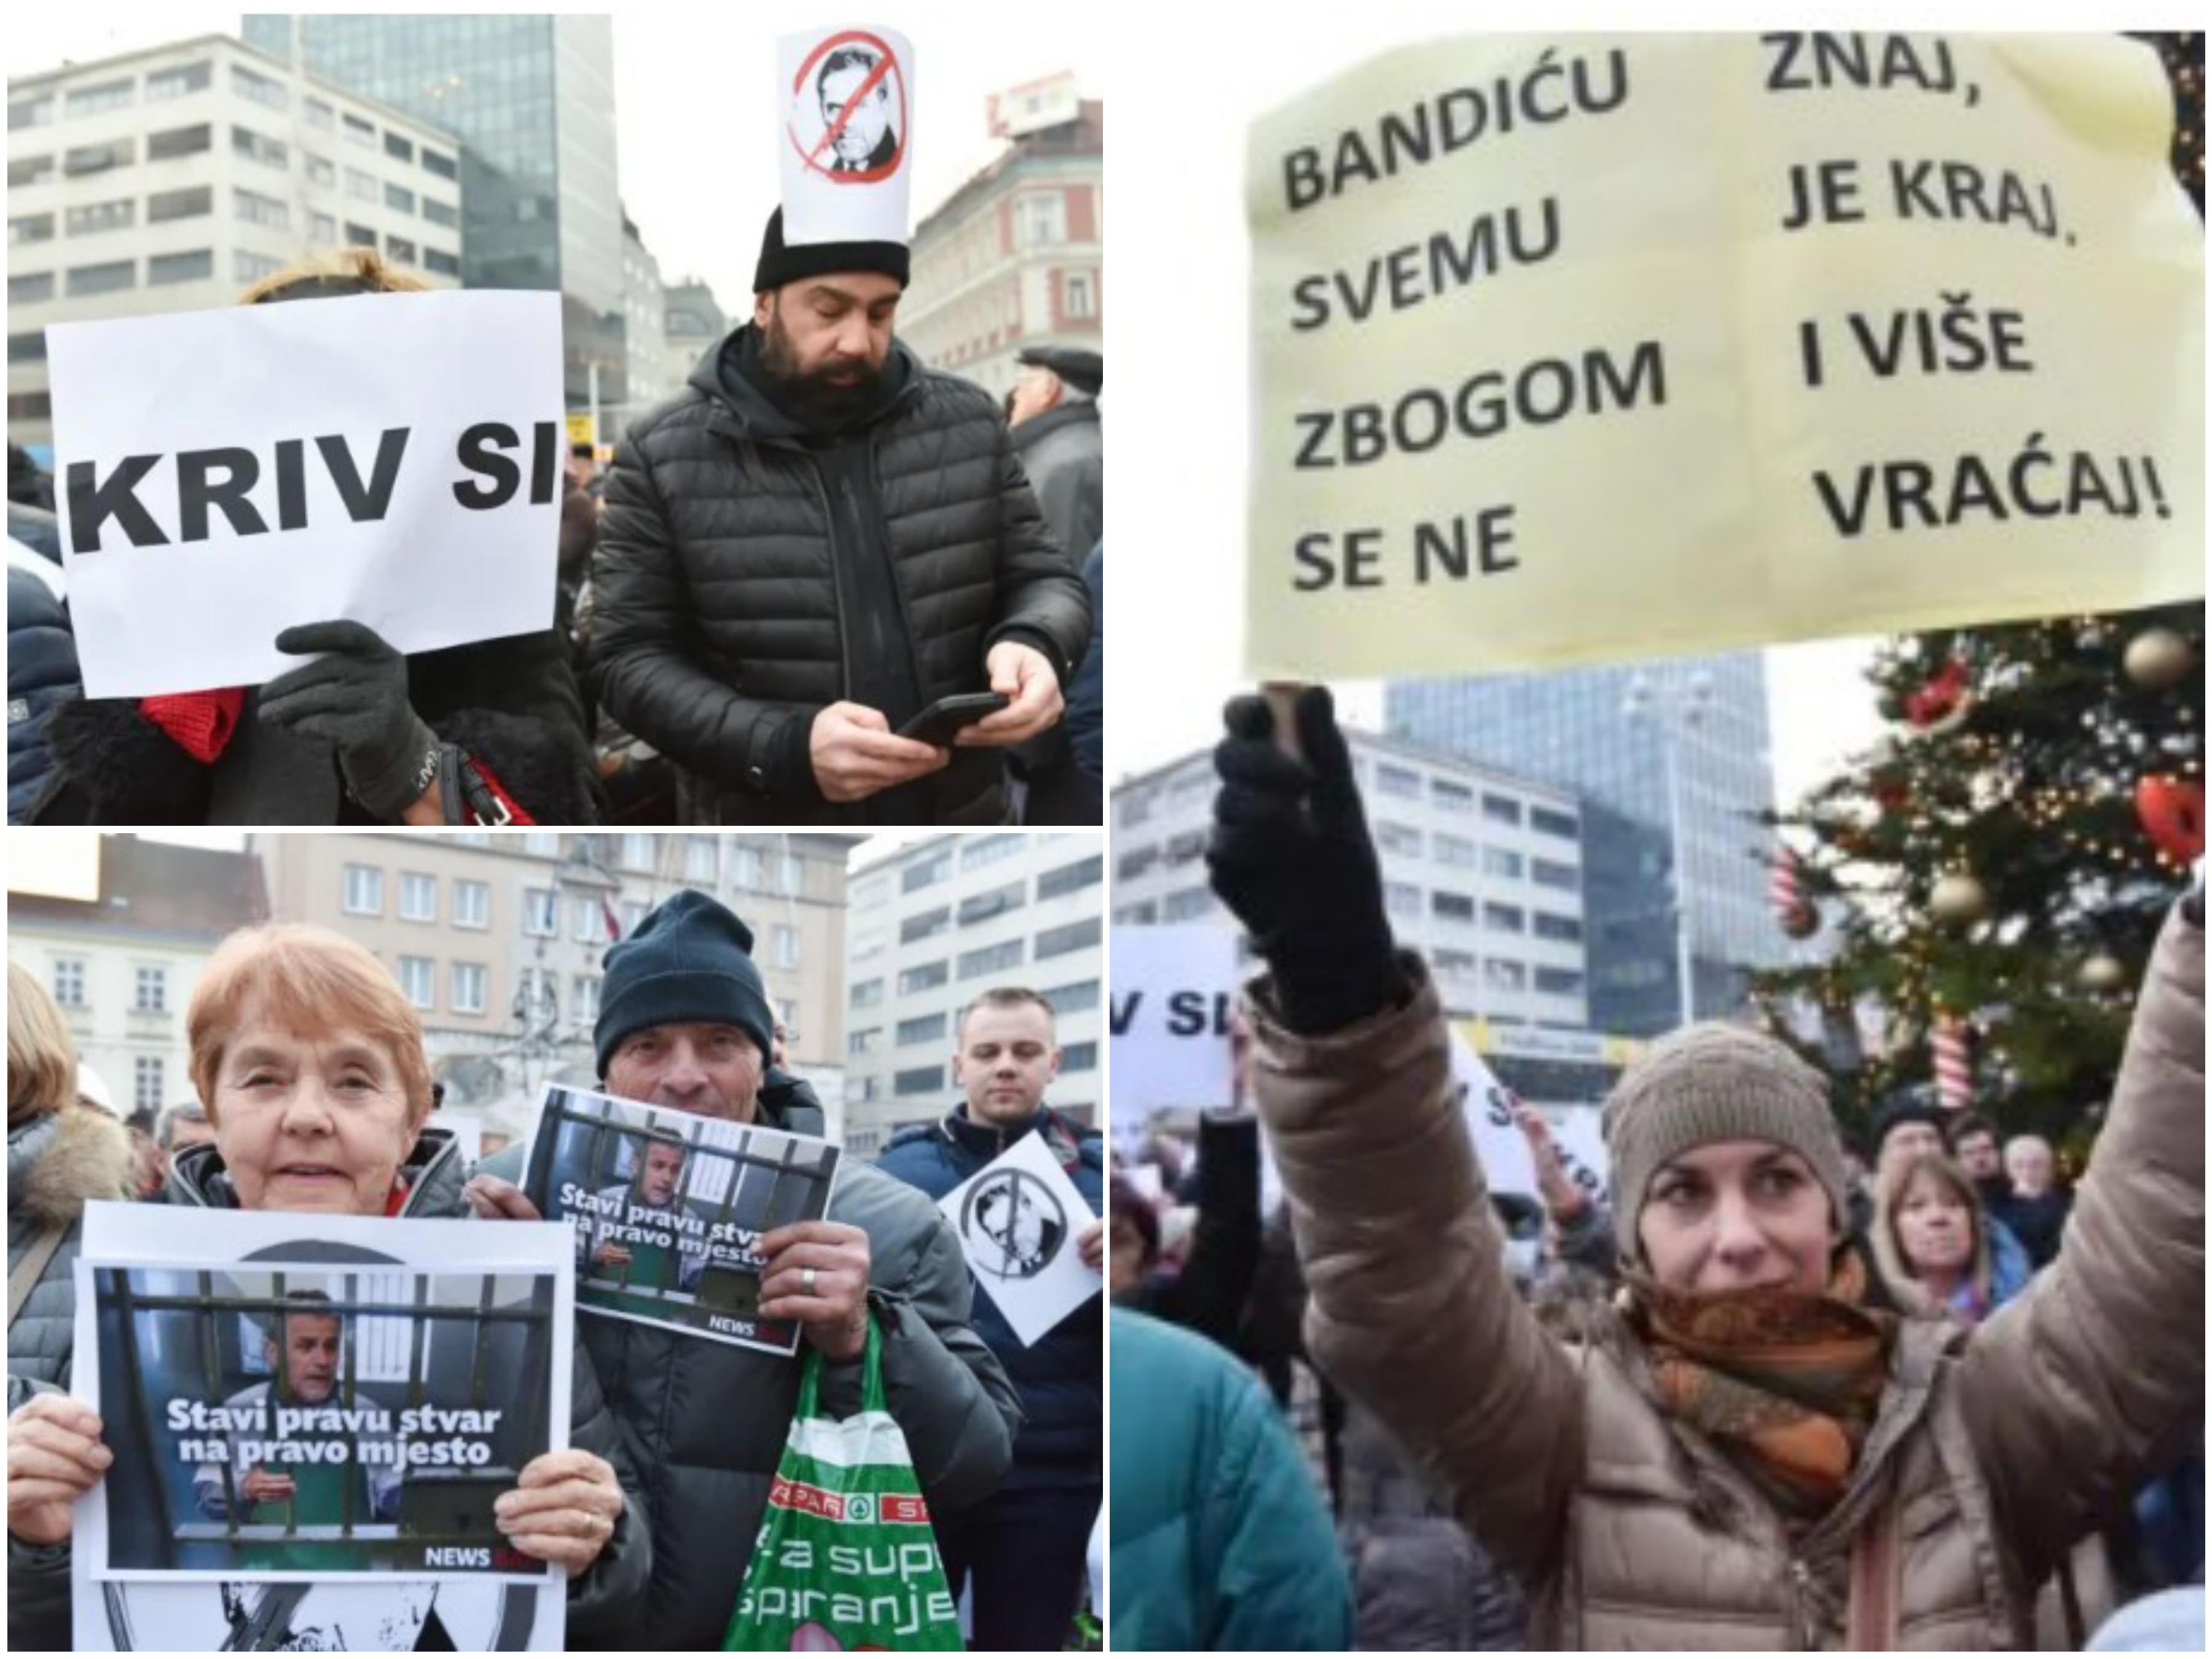 Hiljade ljudi protestiralo protiv Bandića: "Kriv si, odlazi u zatvor"